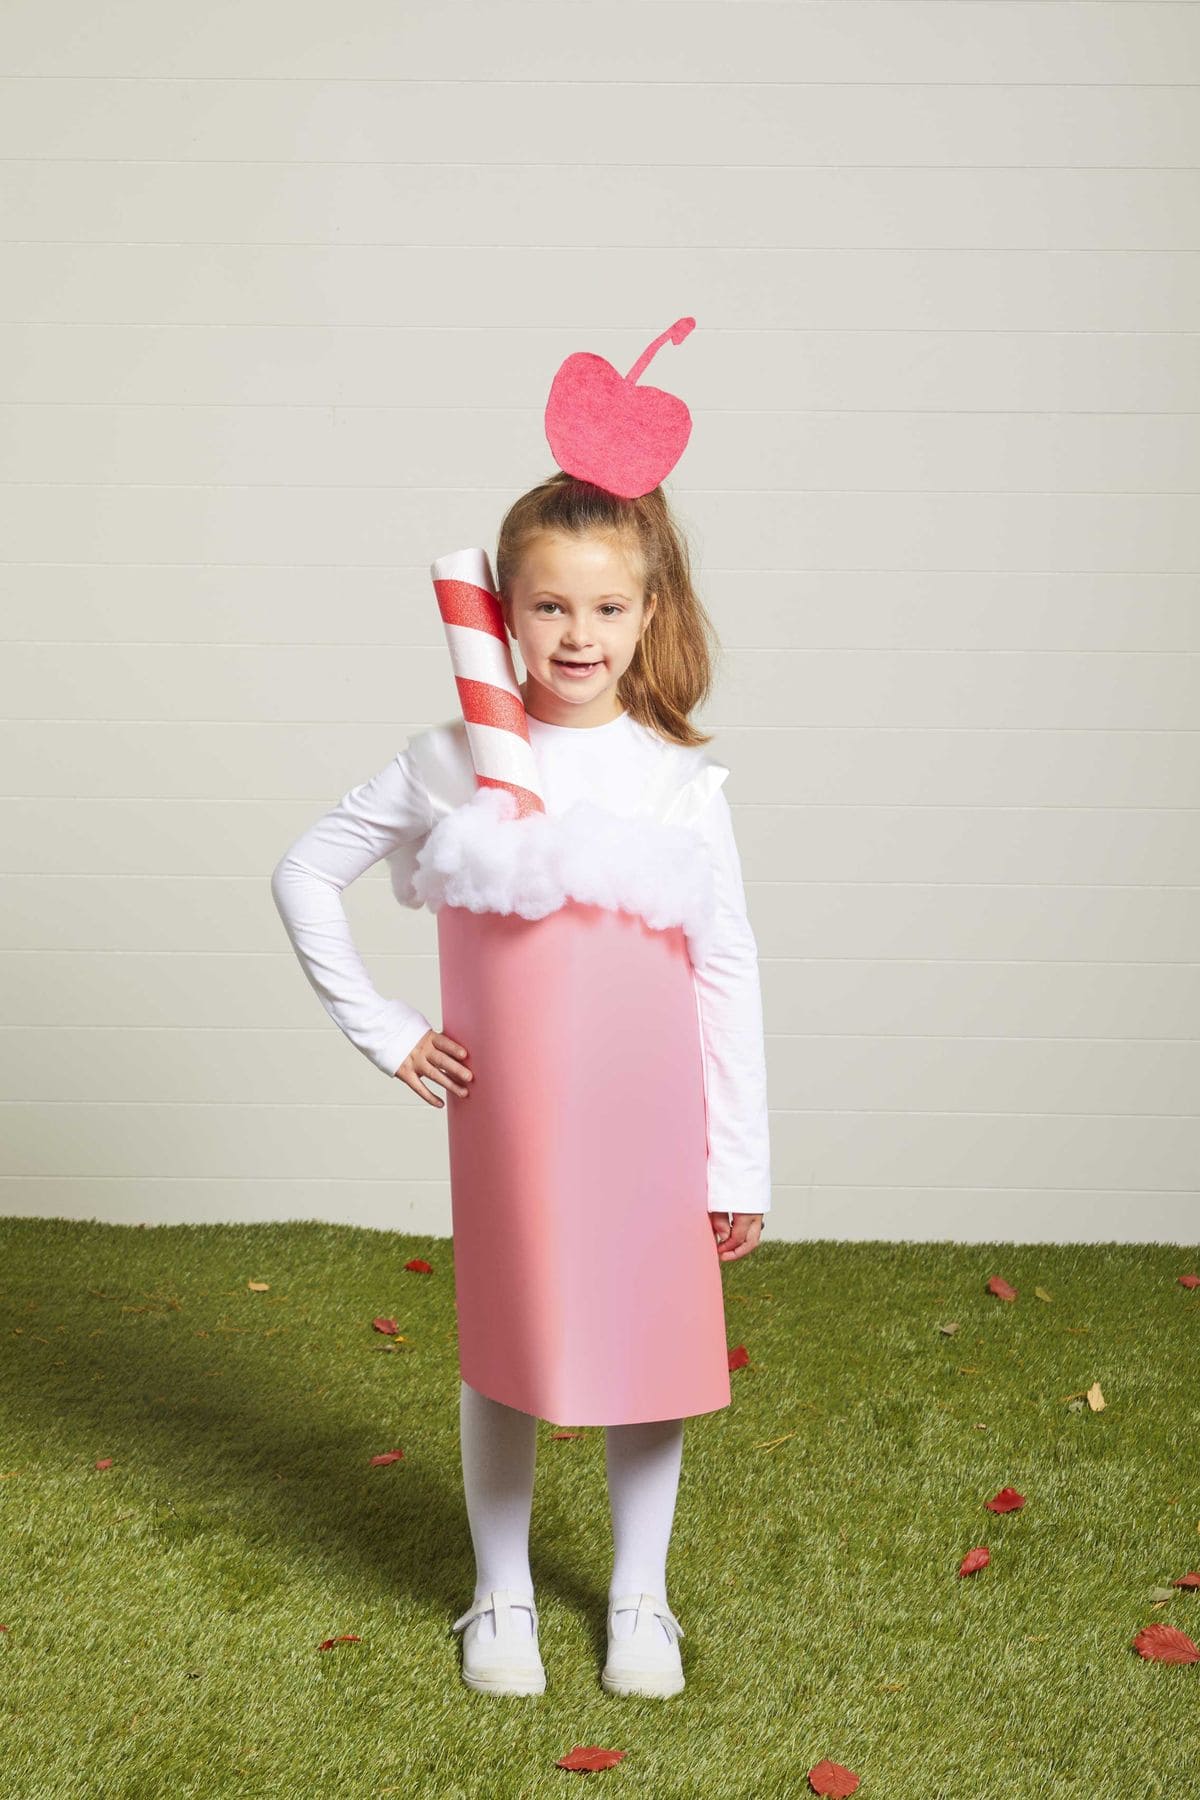 Milkshake costume for kids